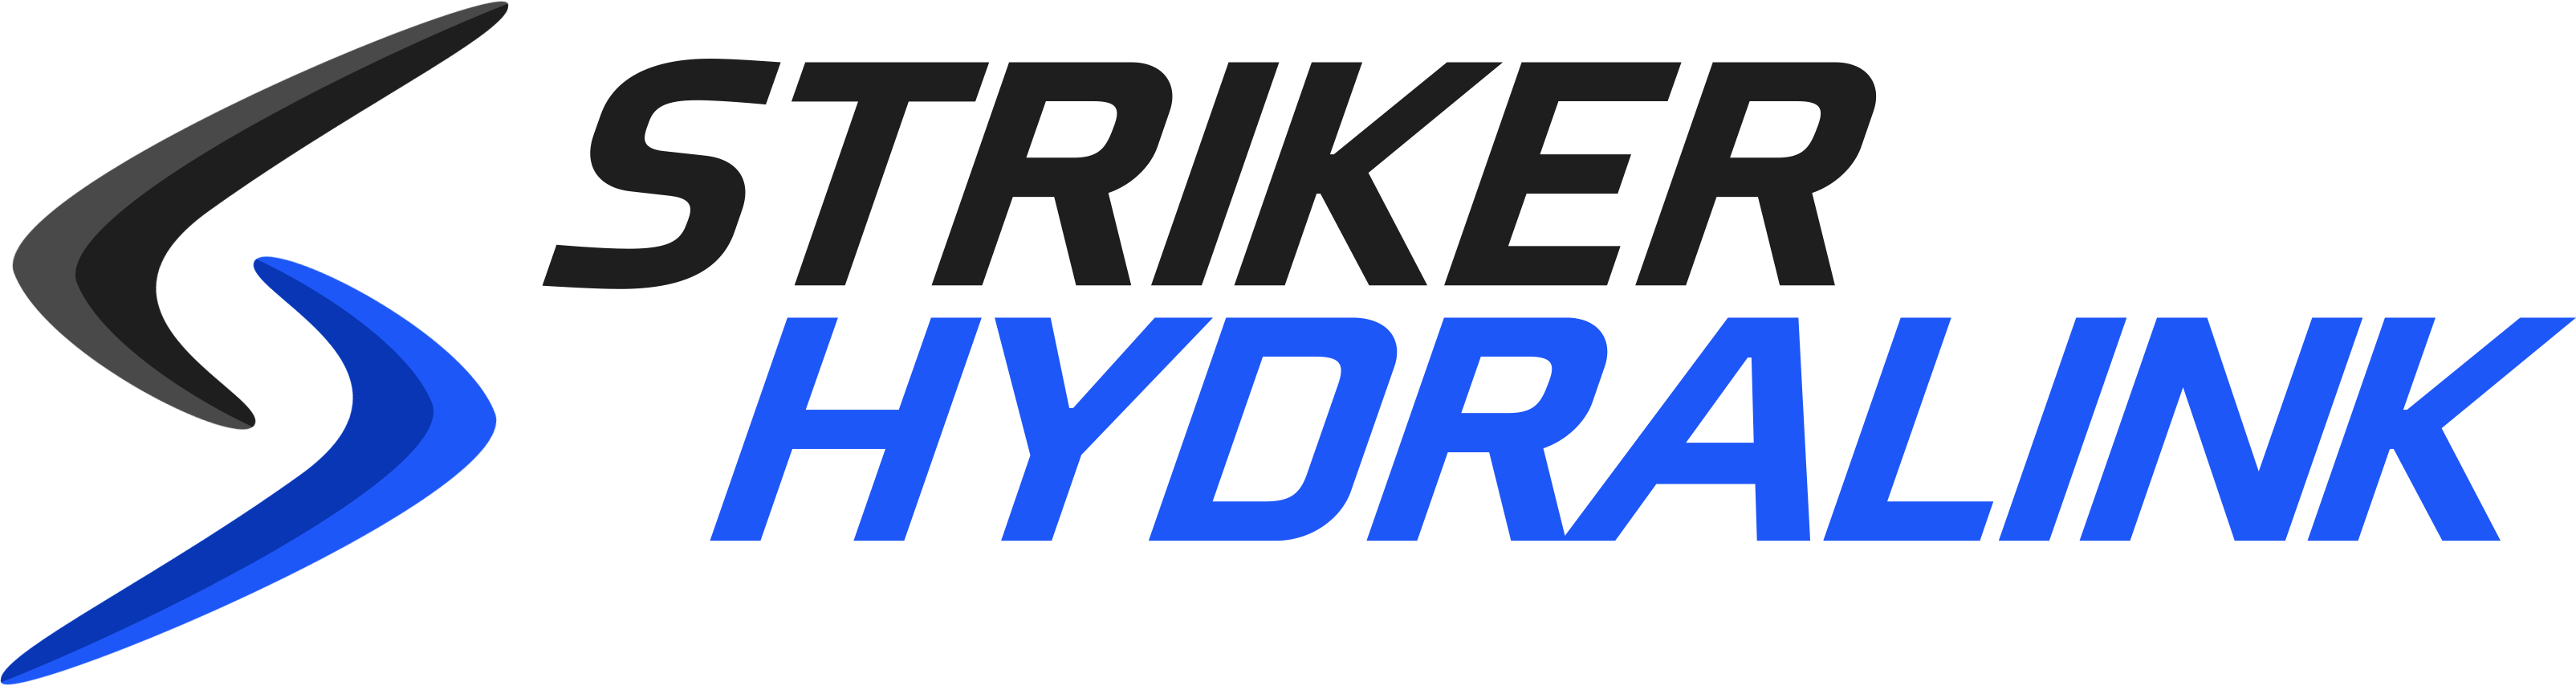 striker hydralink